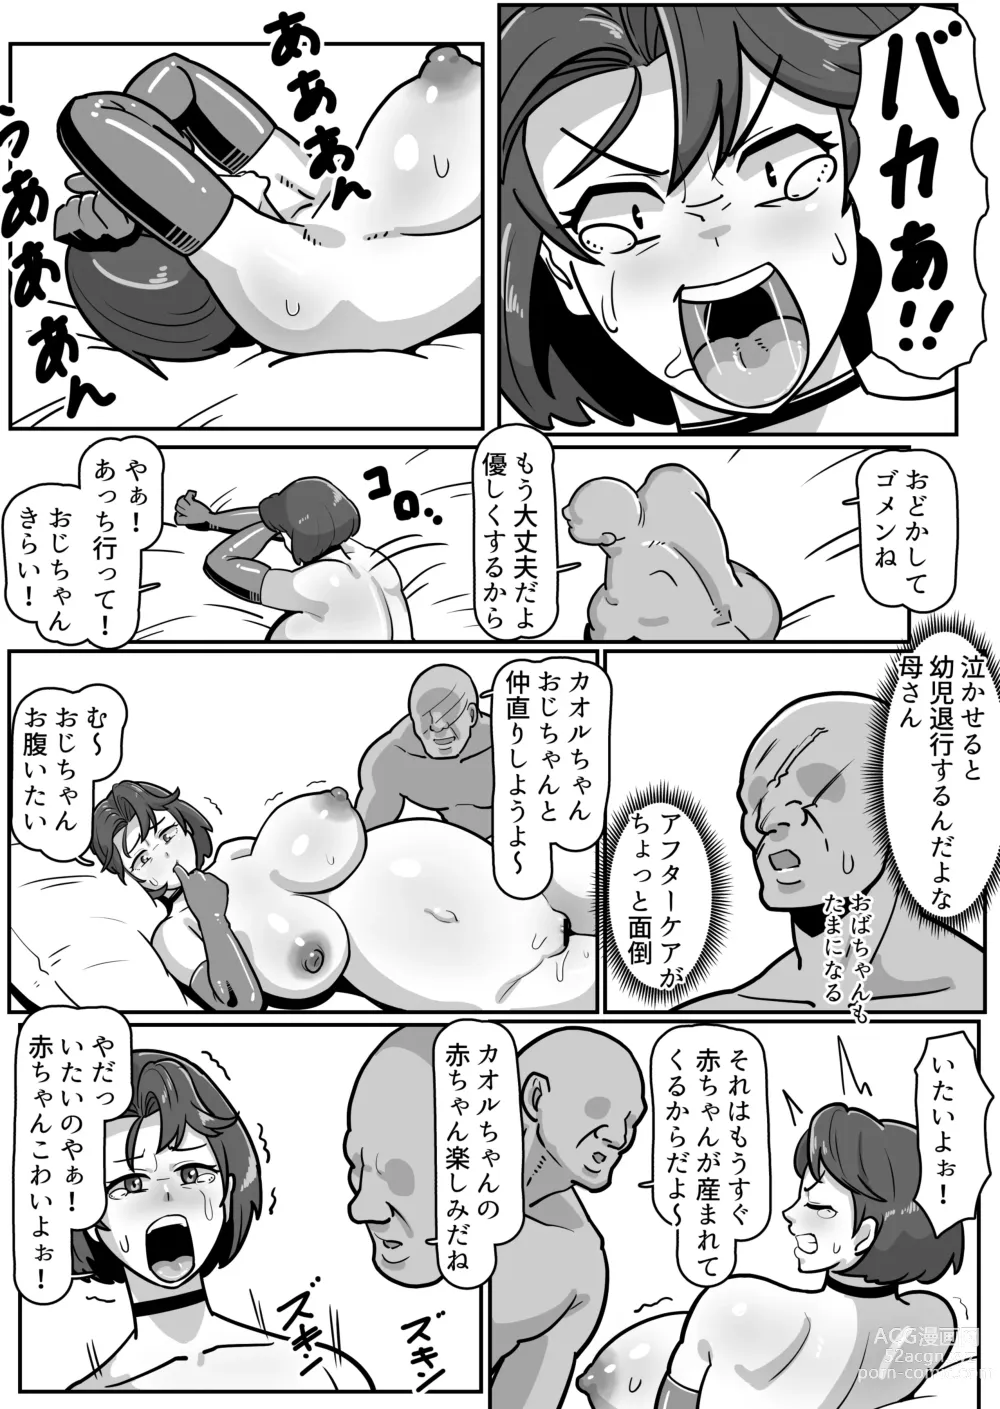 Page 72 of doujinshi Bote Haha ~Ore o Jikka kara Oidashita Mukatsuku Hahaoya o Muriyari Haramasete Botehara Sex Zanmai!~